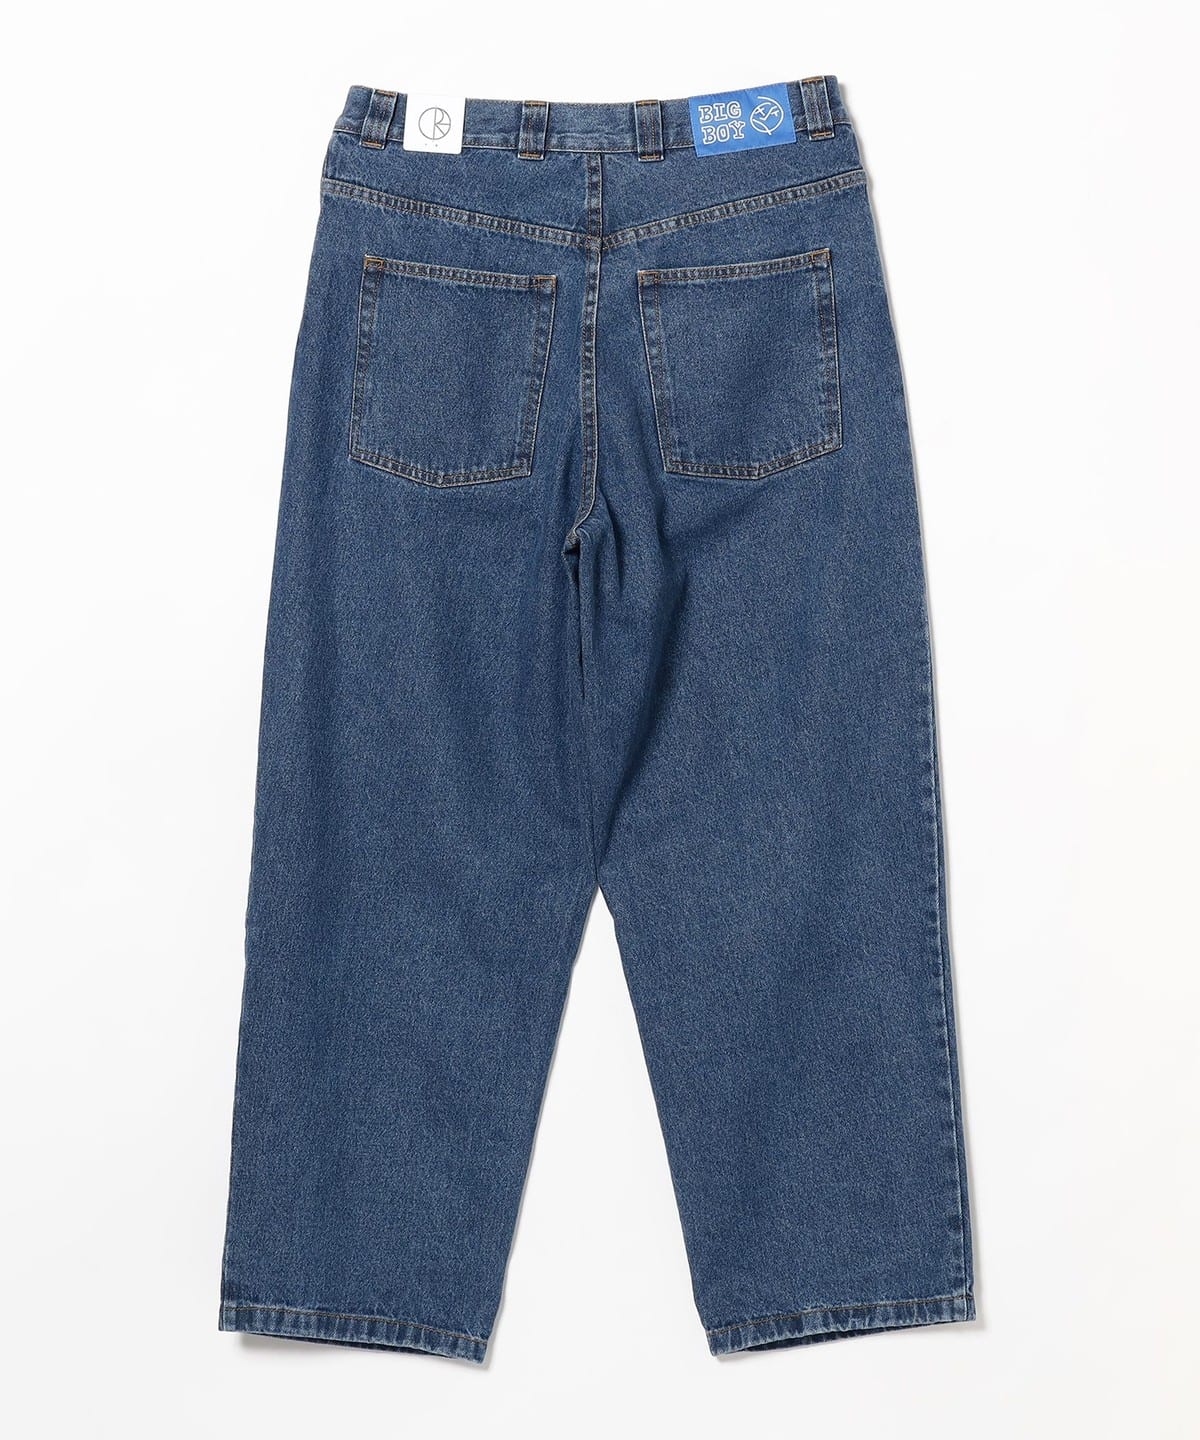 8,289円POLAR SKATE Big Boy Jeans デニム 正規品 期間限定価格